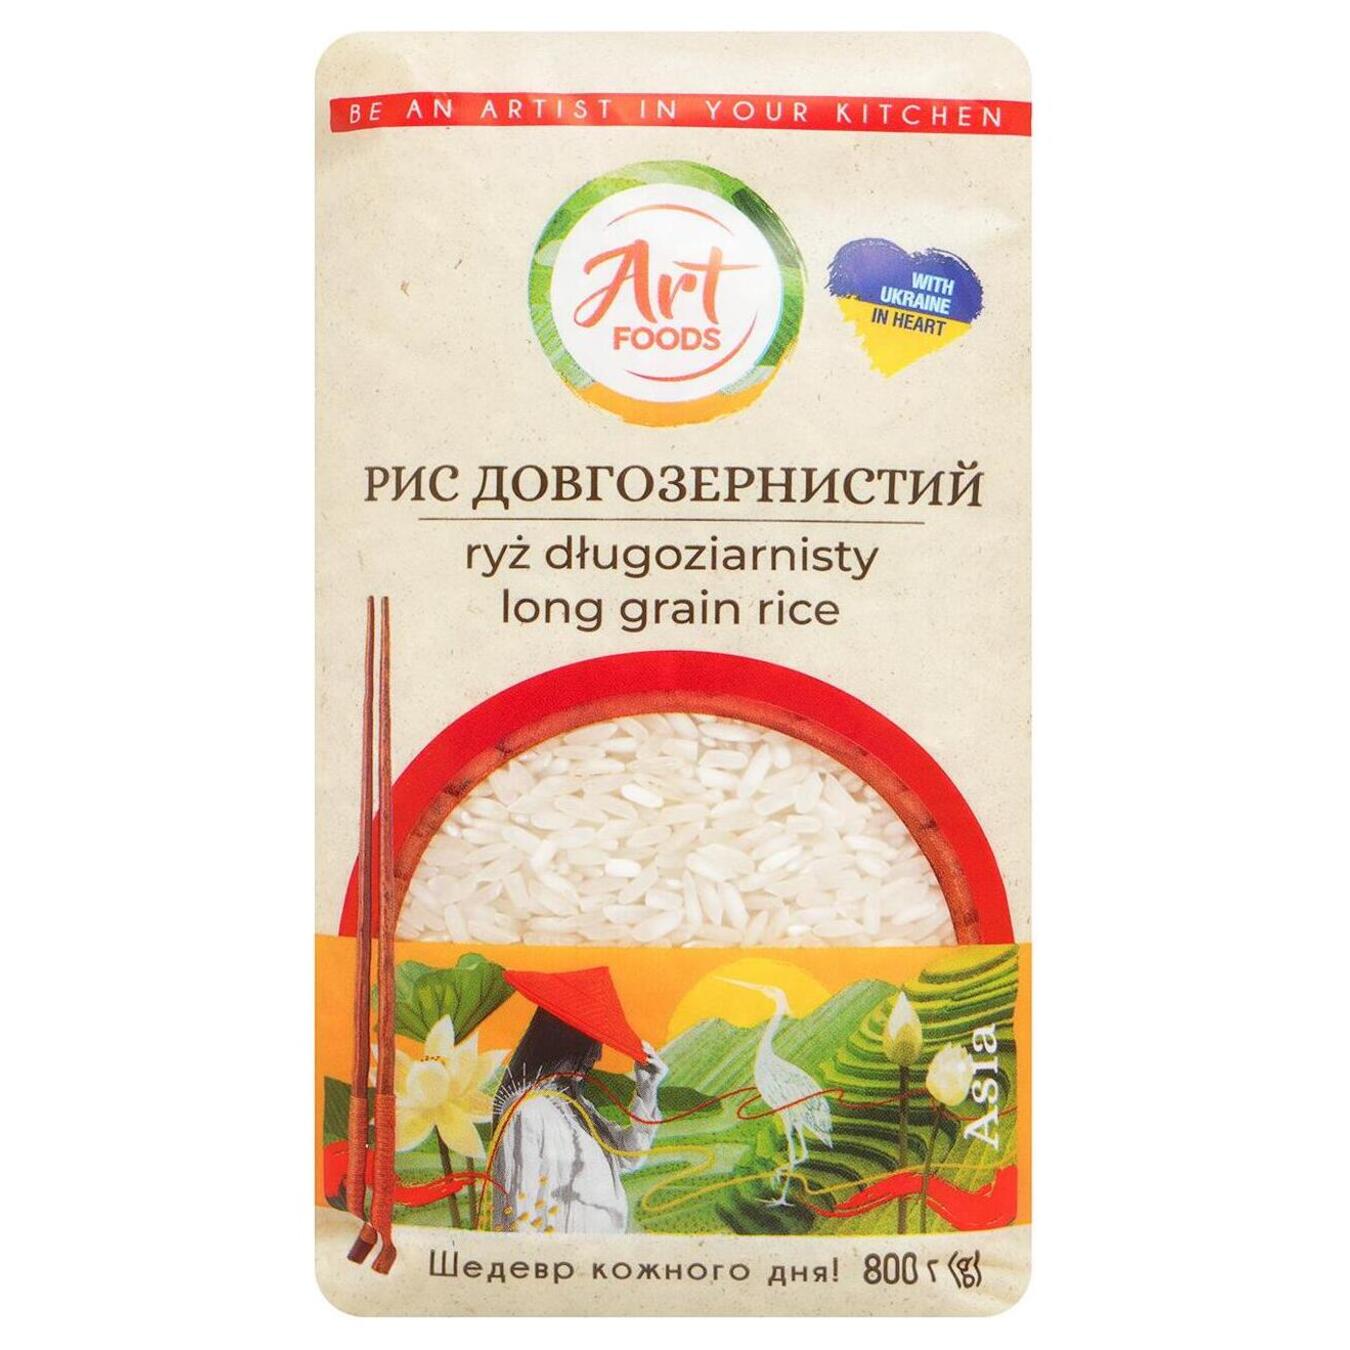 Рис довгозернистий Art Foods 800г